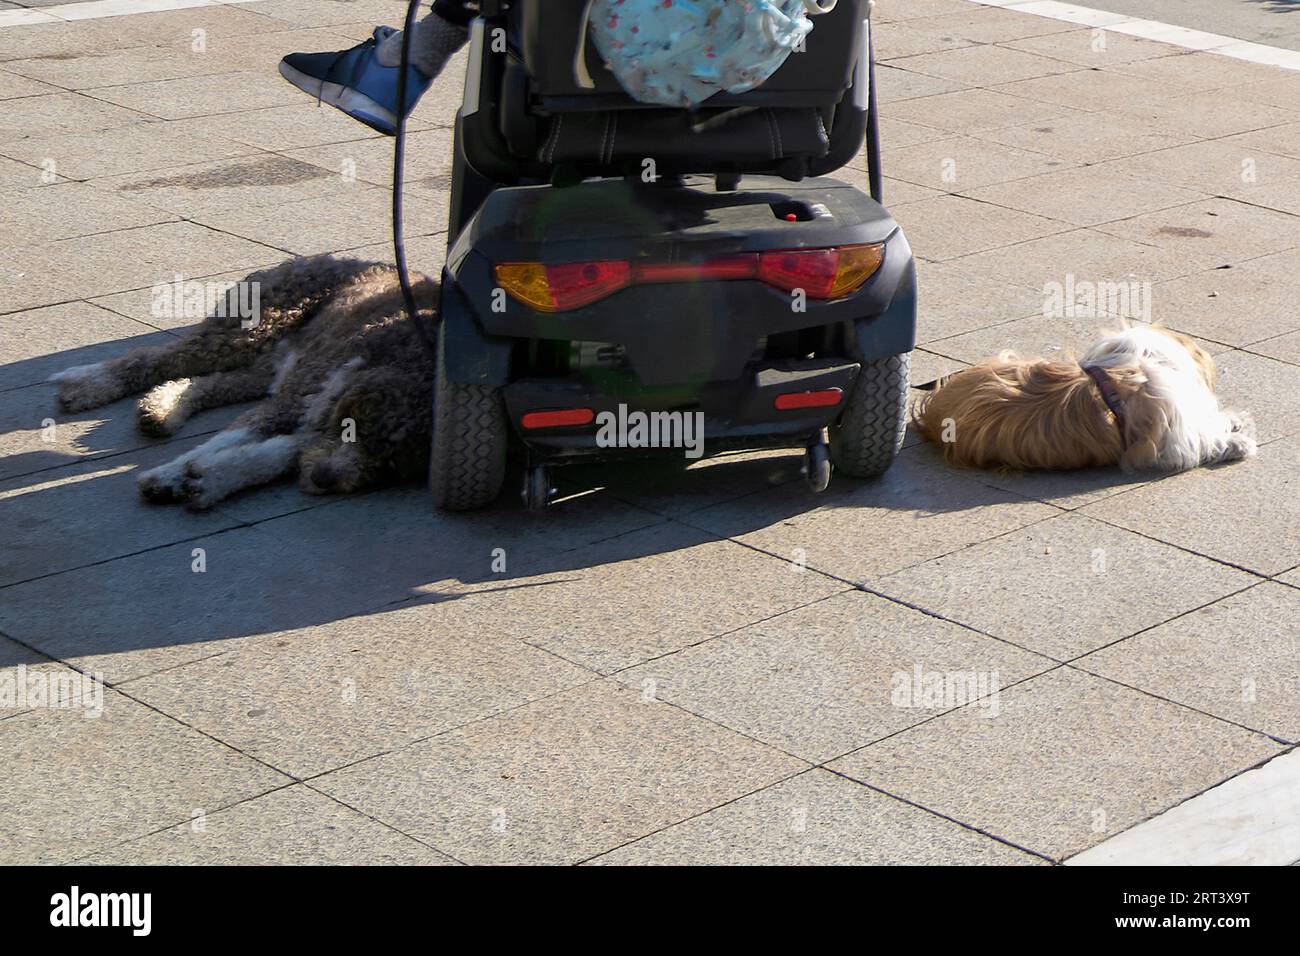 Chiens détendus attachés en laisse à la voiture d'une personne handicapée pour leur tenir compagnie Banque D'Images